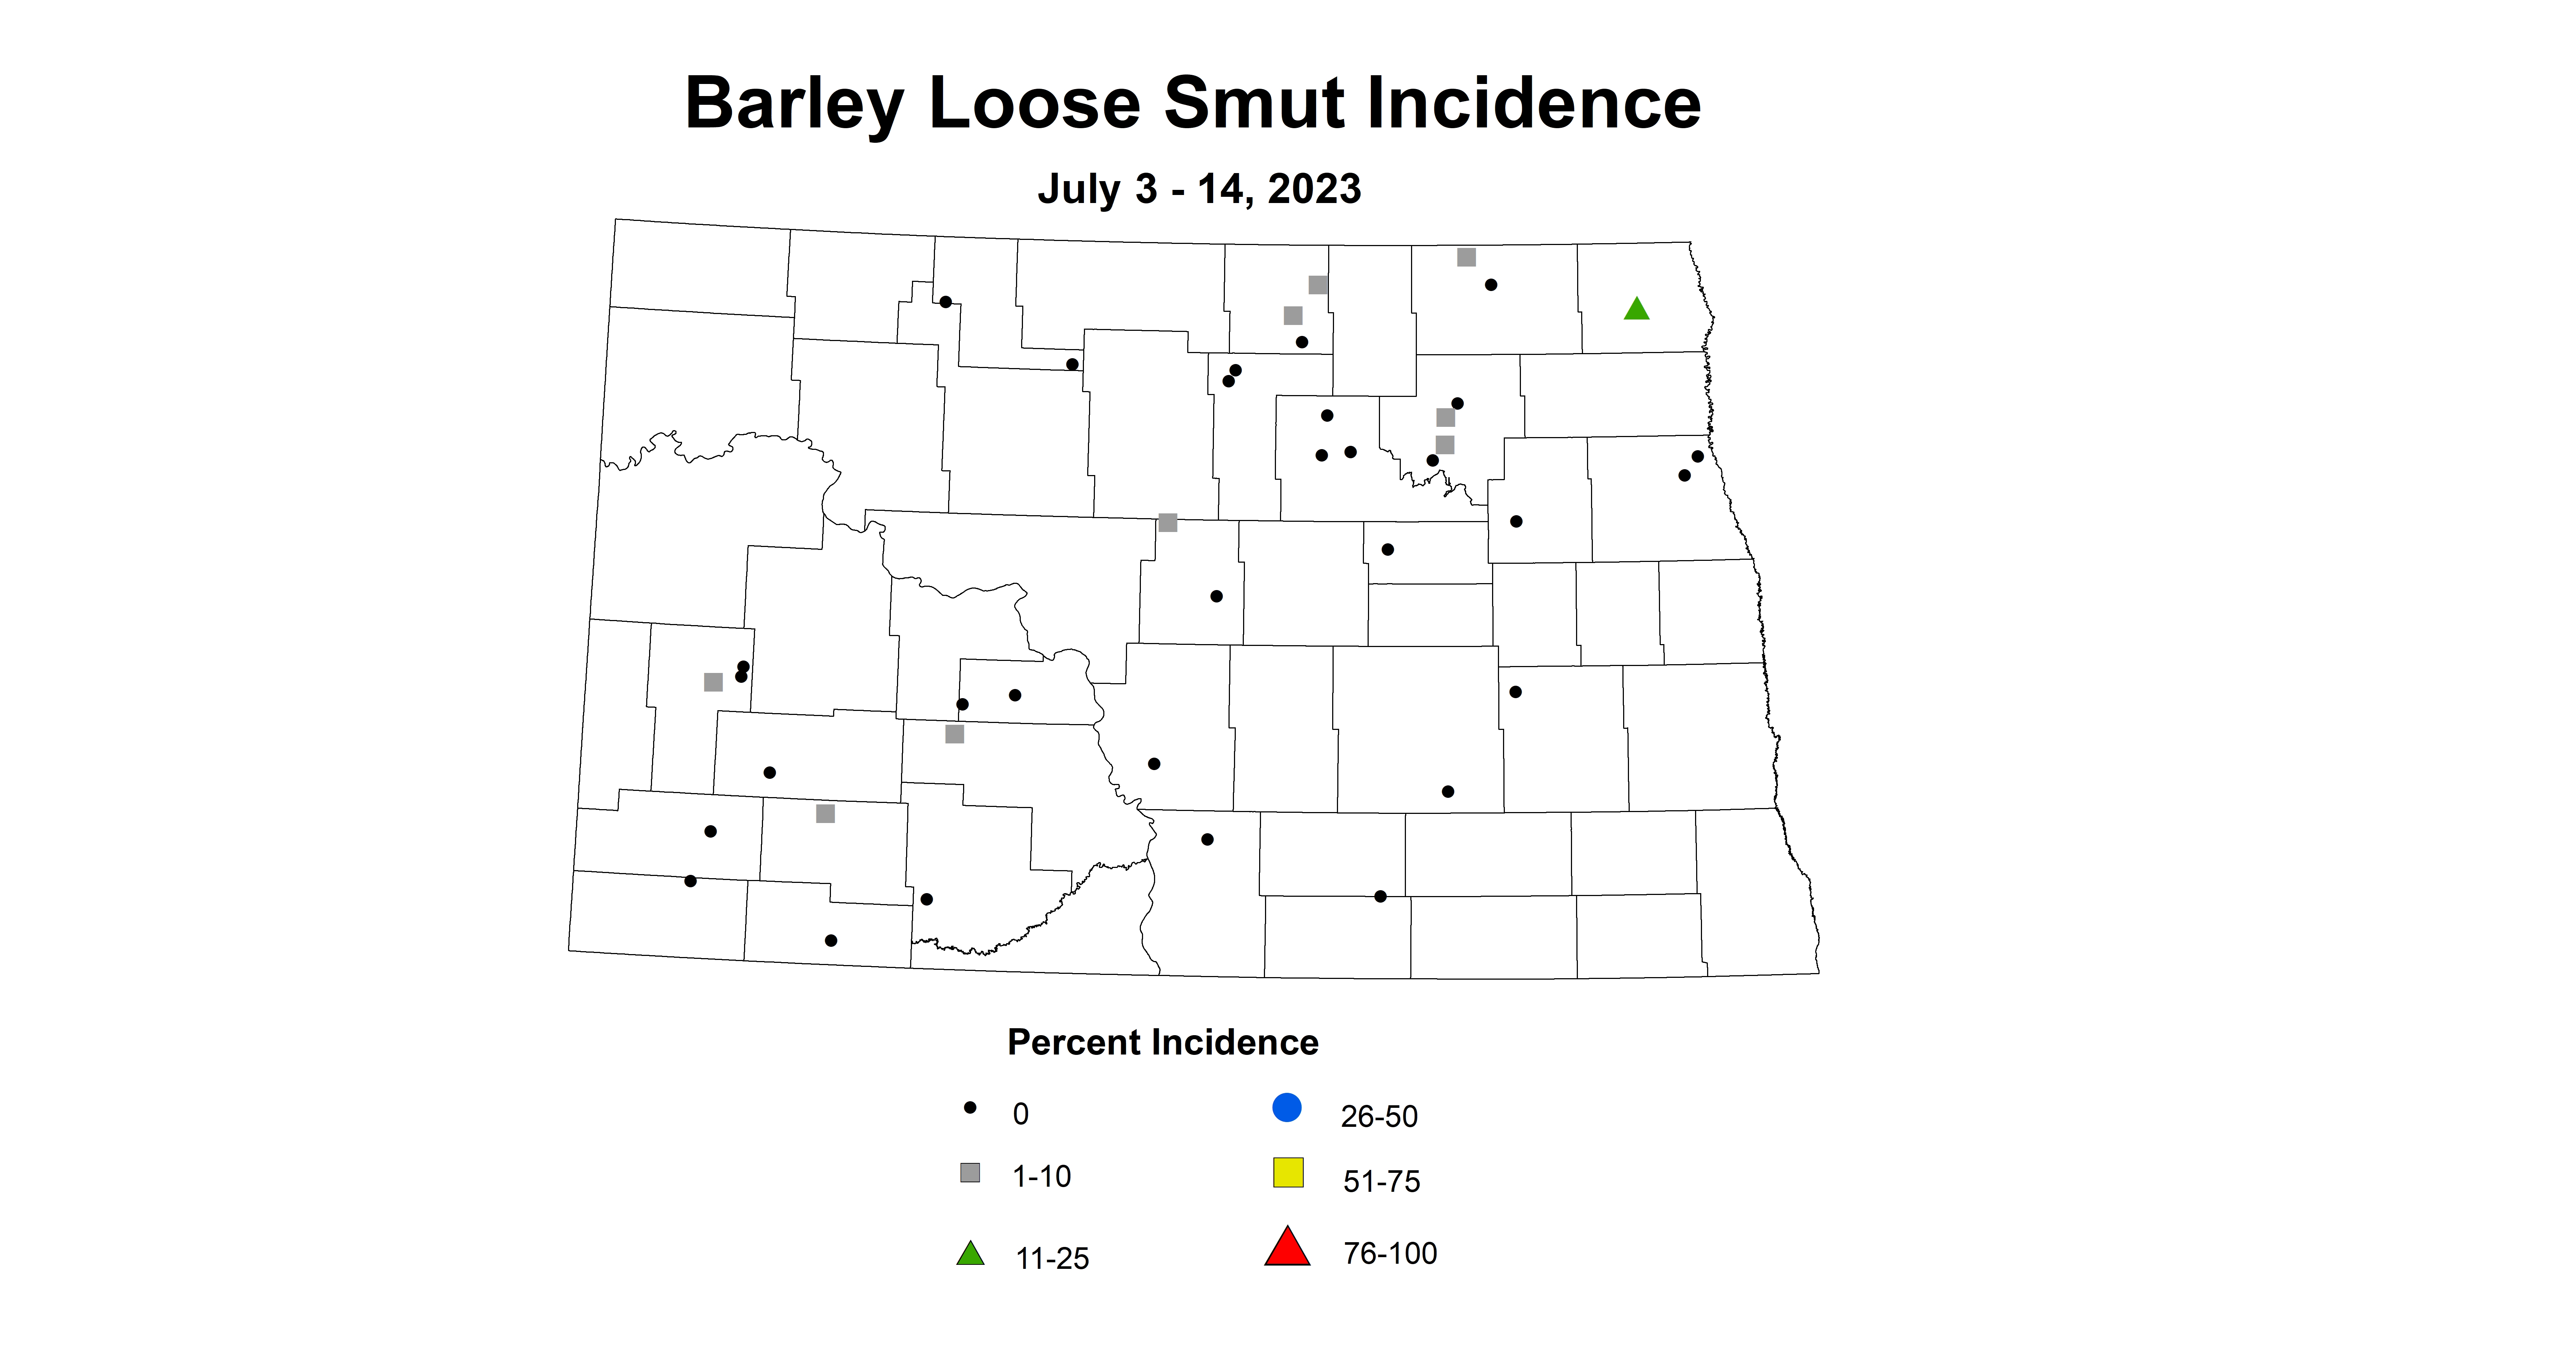 barley loose smut incidence July 3-14 2023